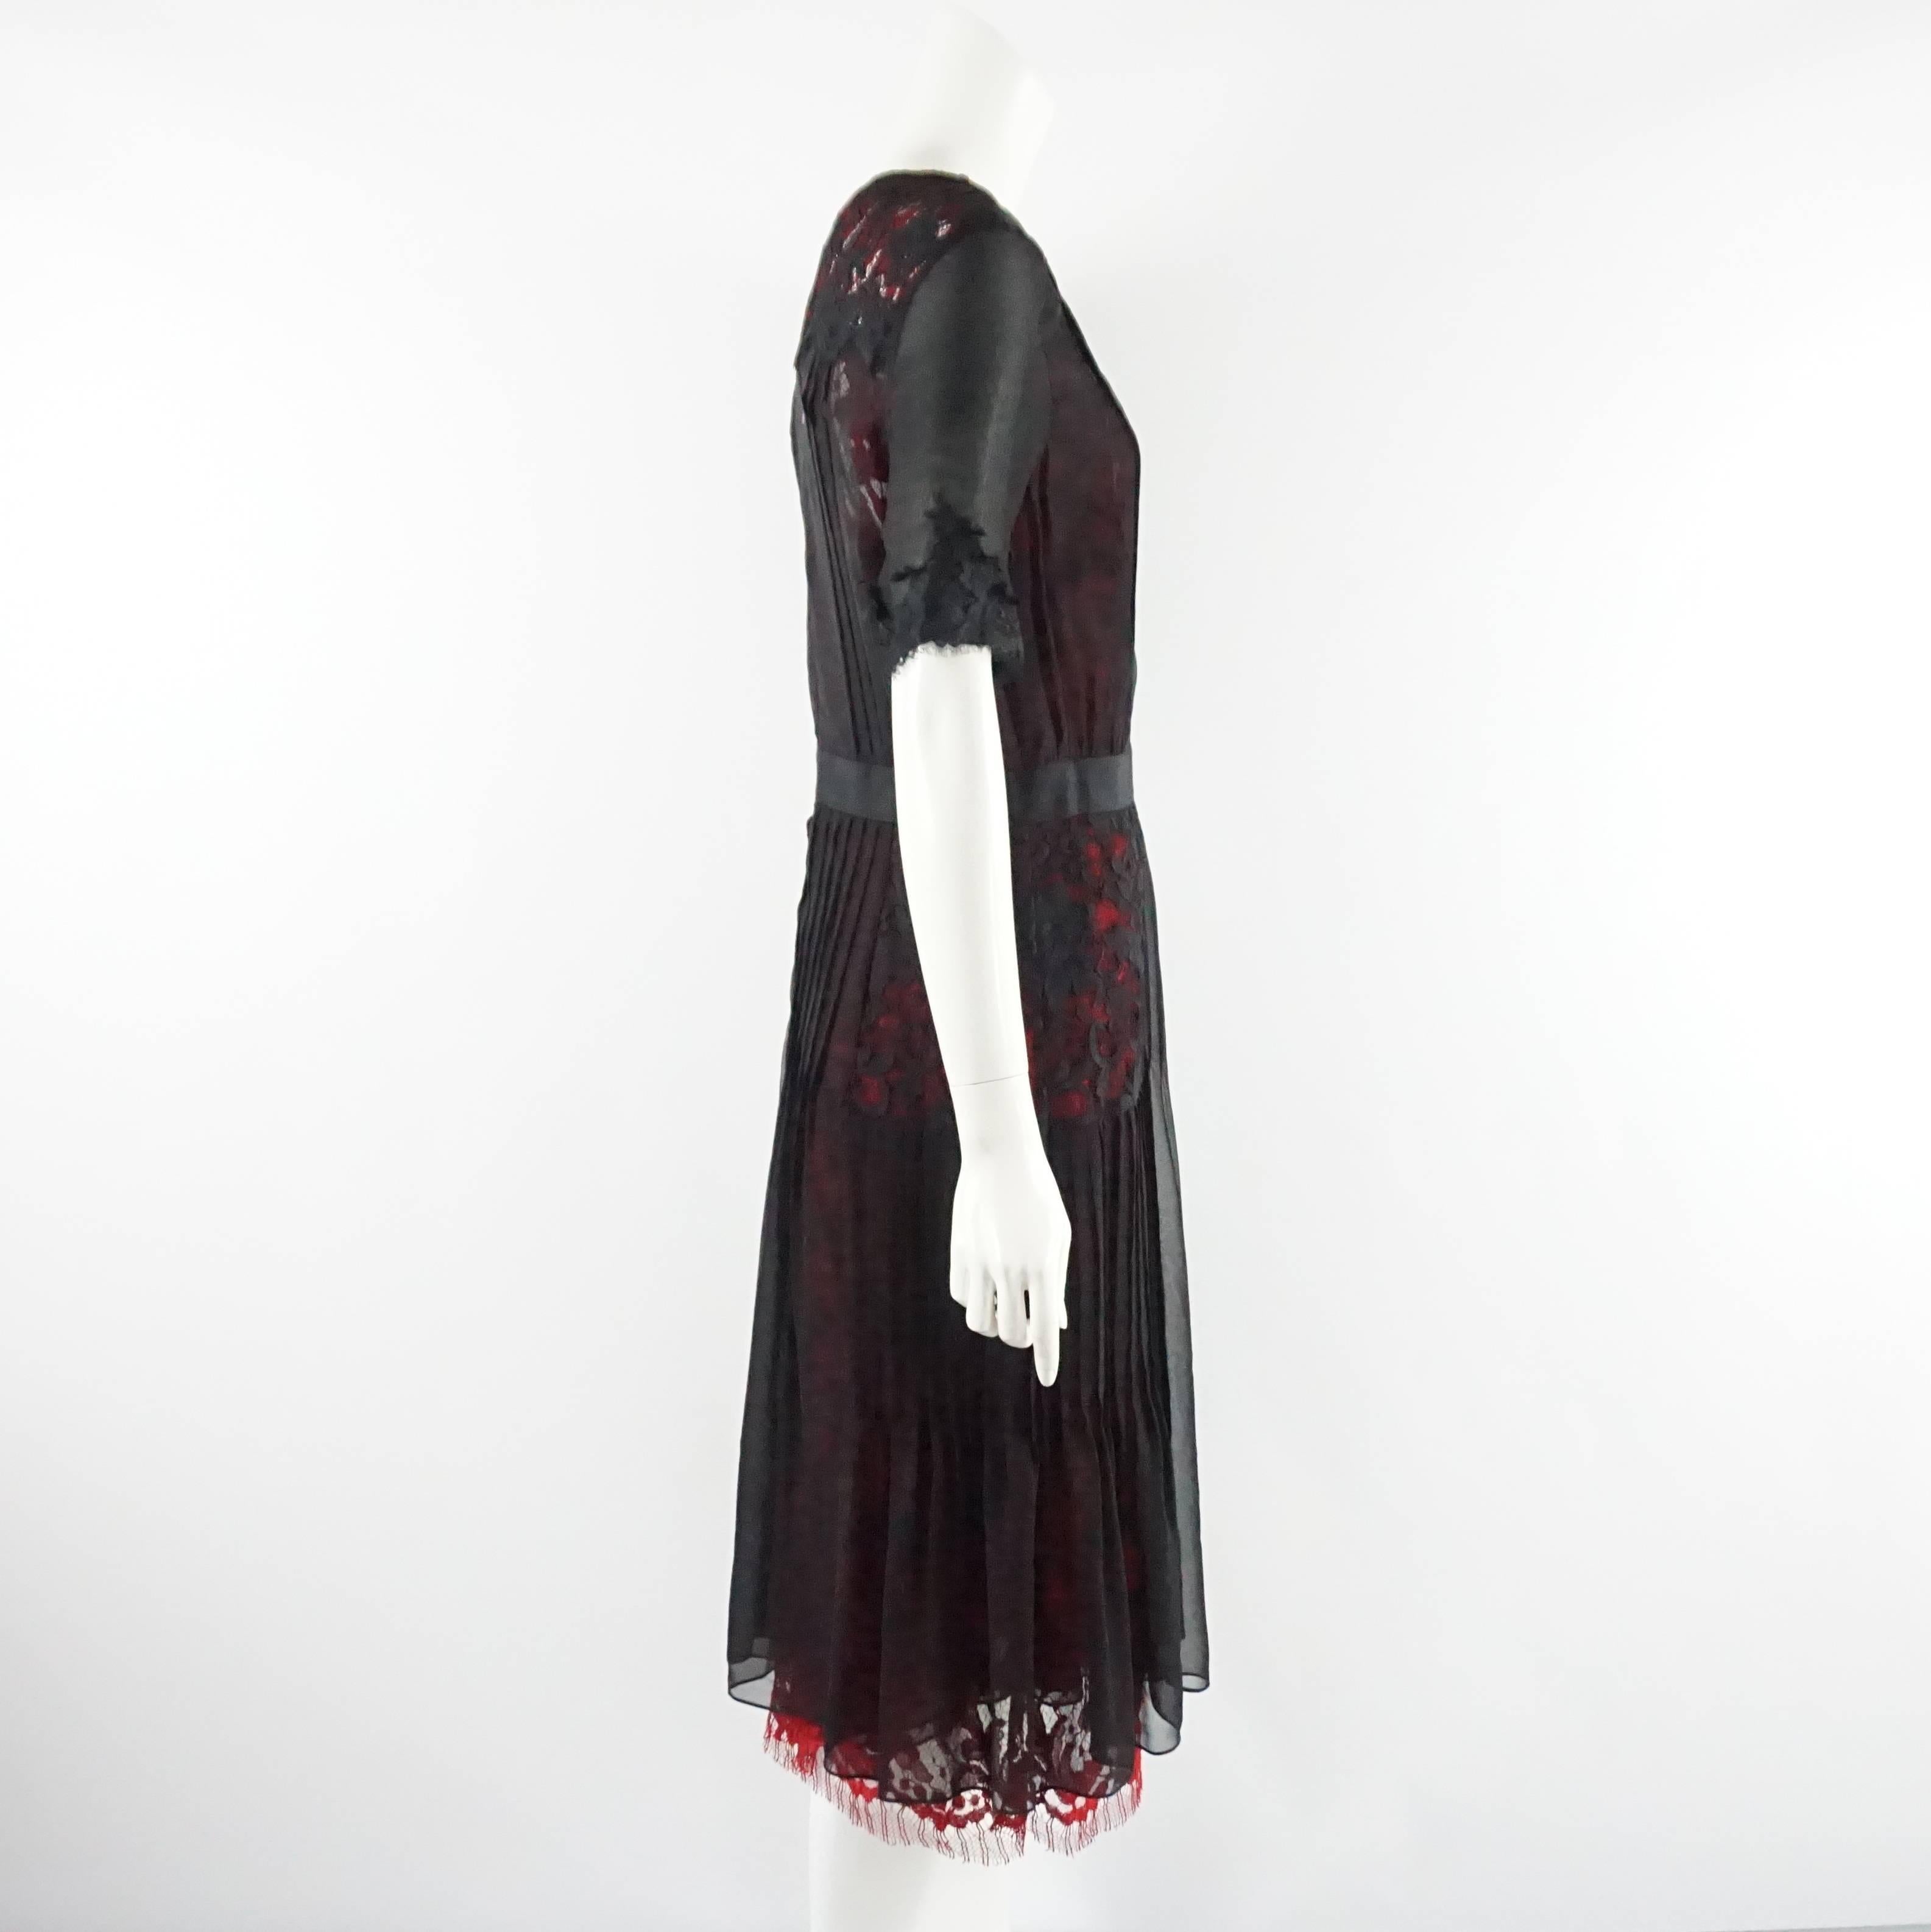 Dieses Kleid von Oscar de la Renta ist schwarz und rot unterlegt. Es ist aus Seidenchiffon und Spitze gefertigt und hat eine schwarze Schleife um die Taille. Dieses Kleid ist in ausgezeichnetem Zustand und hat noch ein Etikett. 

Messungen
Schulter